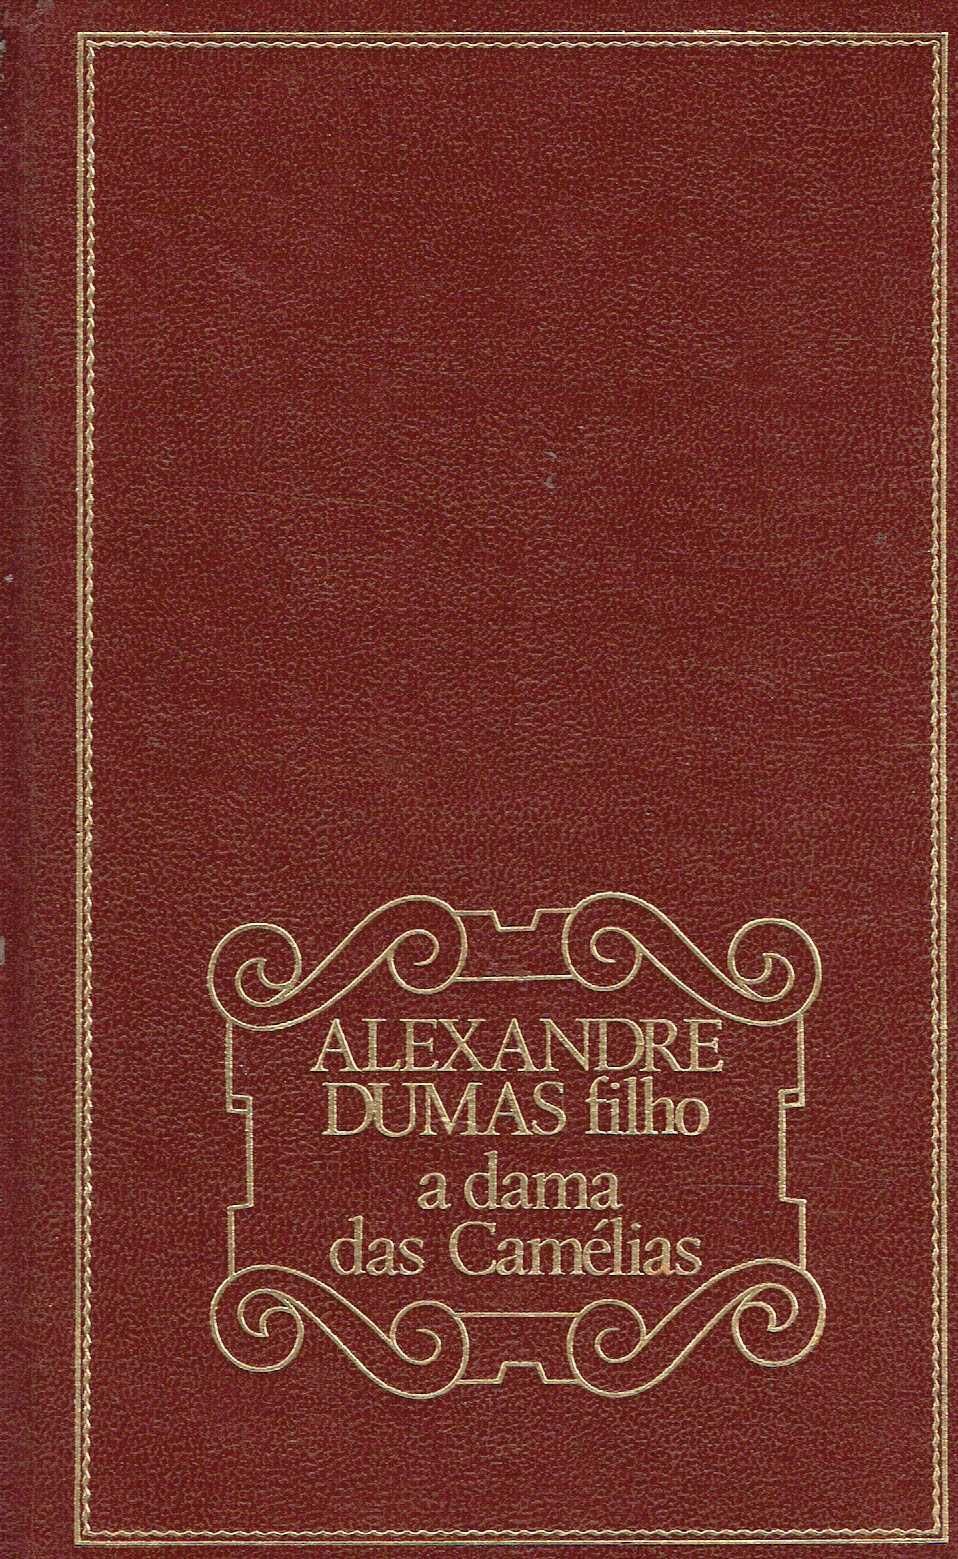 6013

A Dama das Camélias
de Alexandre Dumas Filho